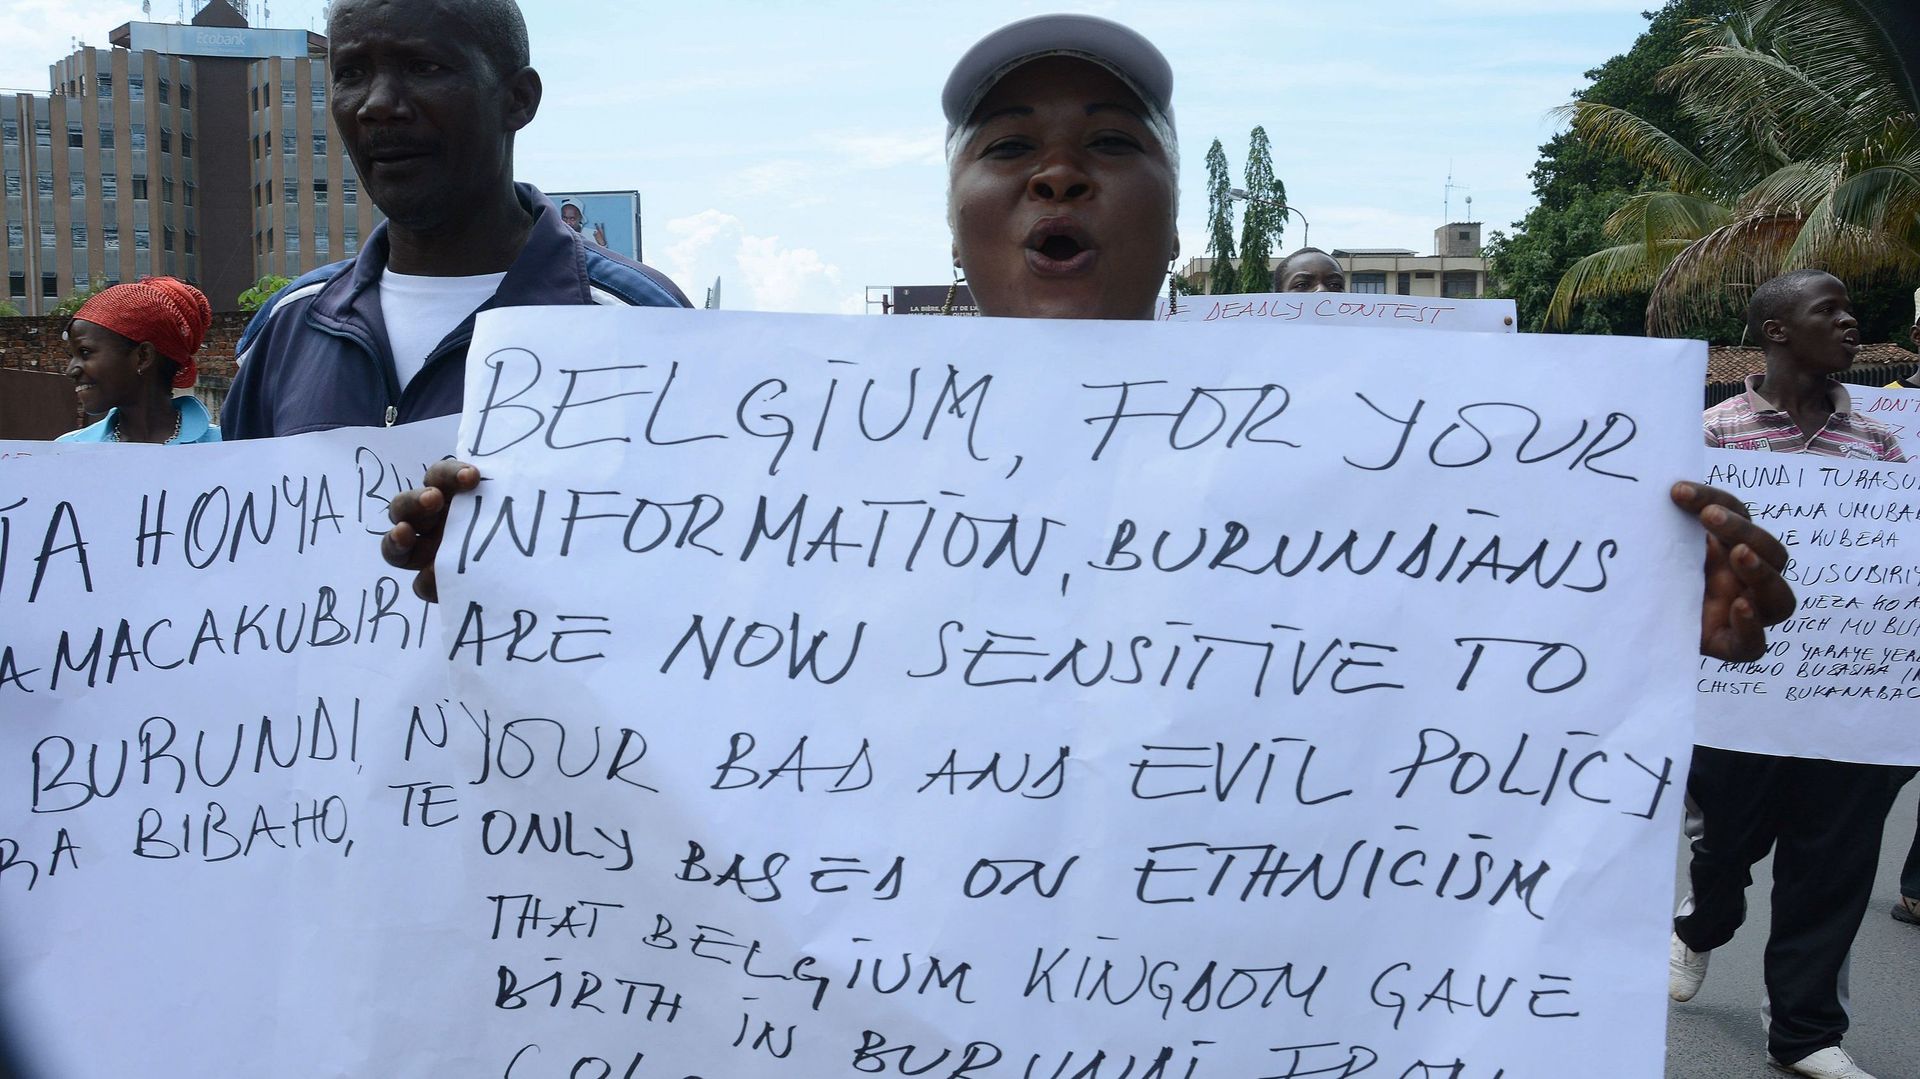 burundi-le-president-nkurunziza-accuse-la-belgique-d-avoir-seme-les-divisions-ethniques